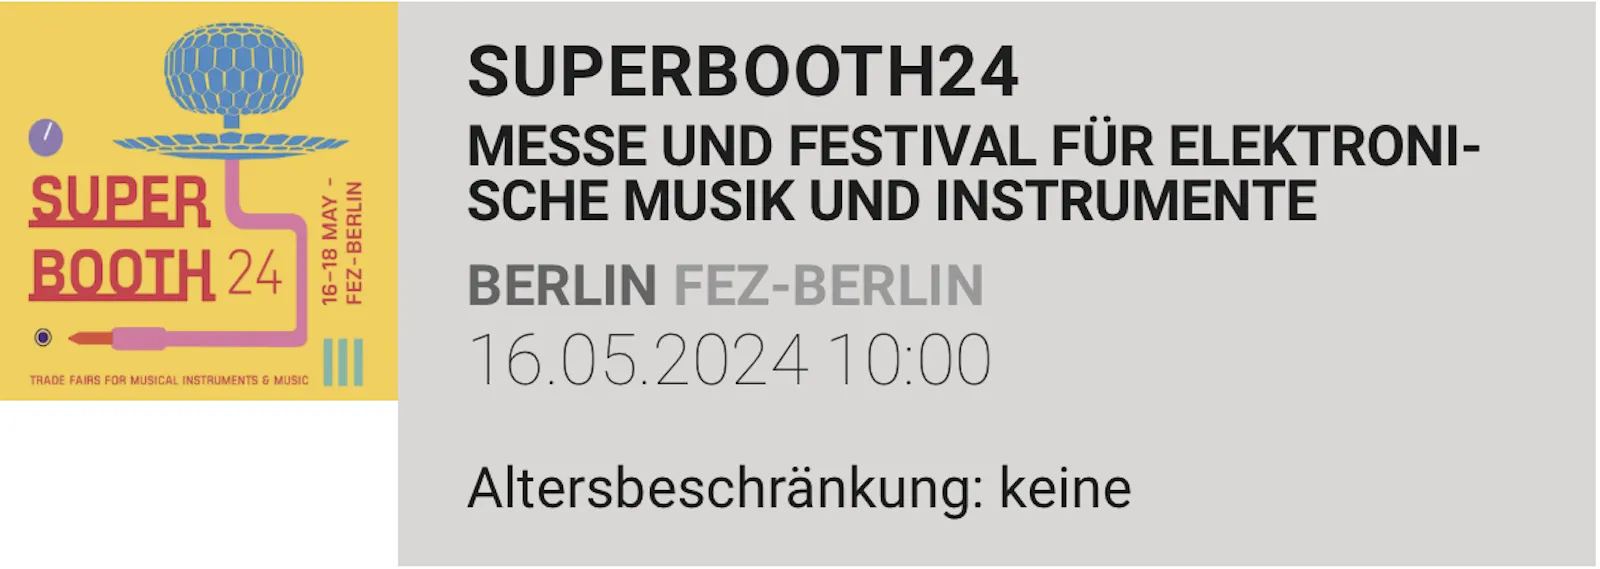 Ticket Link zur Superbooth24 in Berlin vom 16 bis 18 Mai 2024,
die Synthesizer Messe